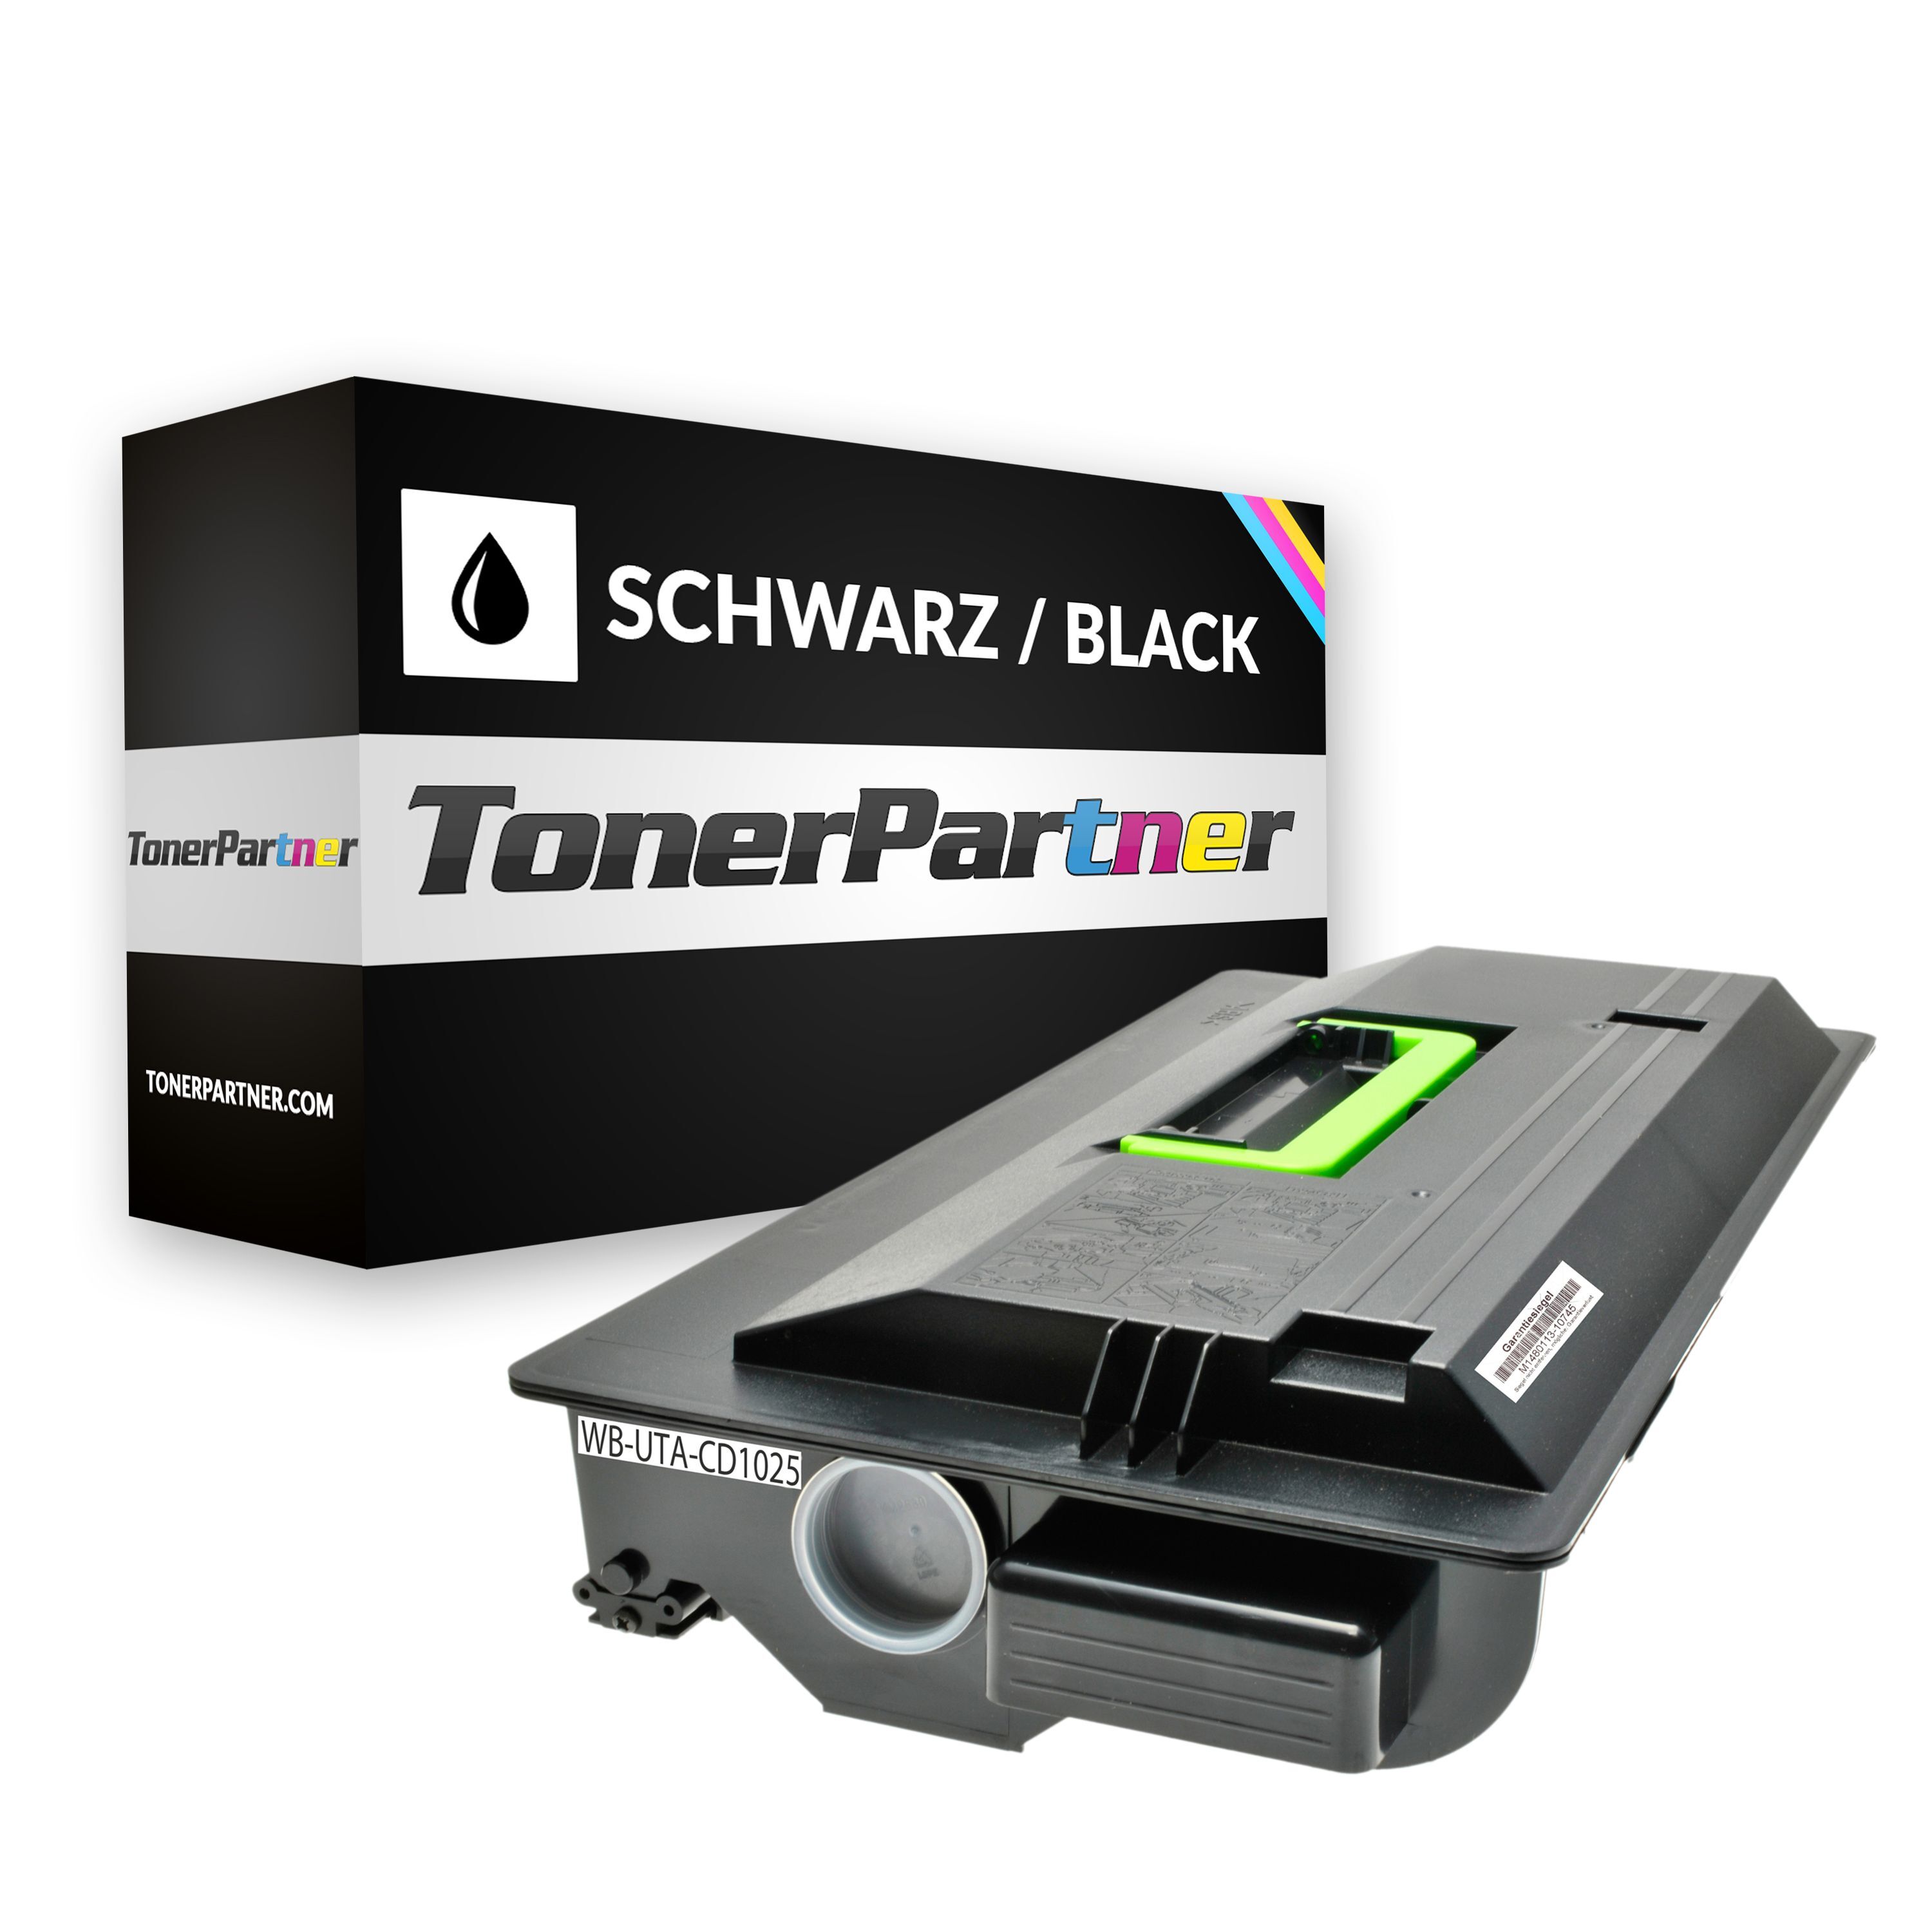 TonerPartner Kompatibel zu Utax CD 1035 Toner (6125 10010) schwarz, 34.000 Seiten, 0,29 Rp pro Seite, Inhalt: 1.080 g von TonerPartner